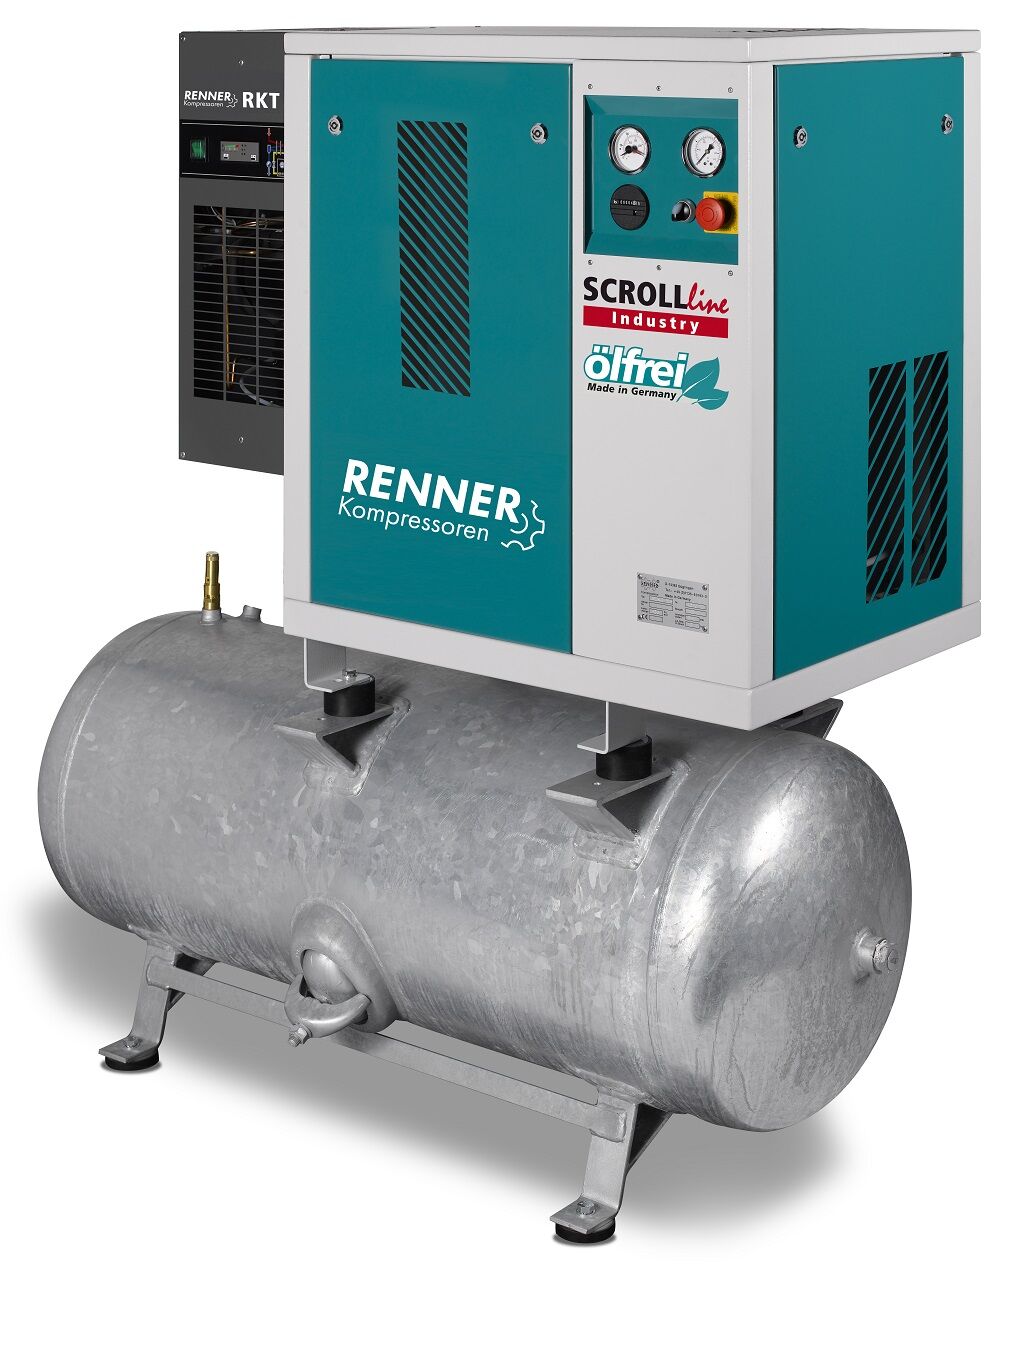 RENNER-Scrollkompr. Industry ölfrei - SLDK-I 2,2 auf 250 Liter Druckbehälter mit Kältetrockner